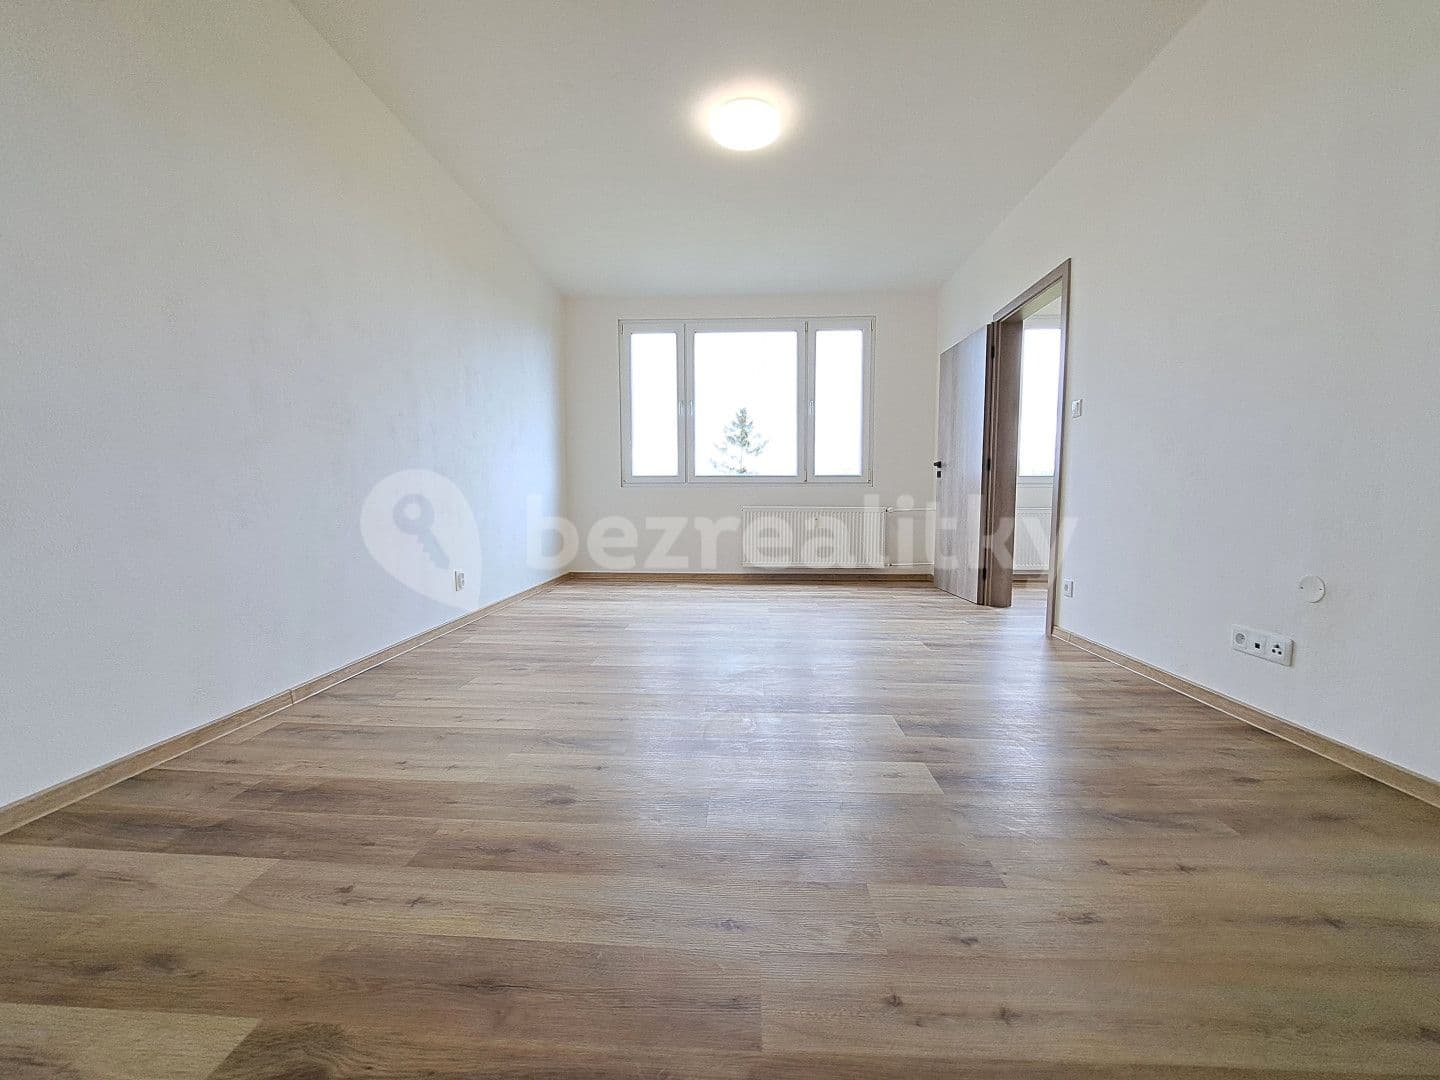 2 bedroom flat for sale, 63 m², B. Němcové, Milevsko, Jihočeský Region